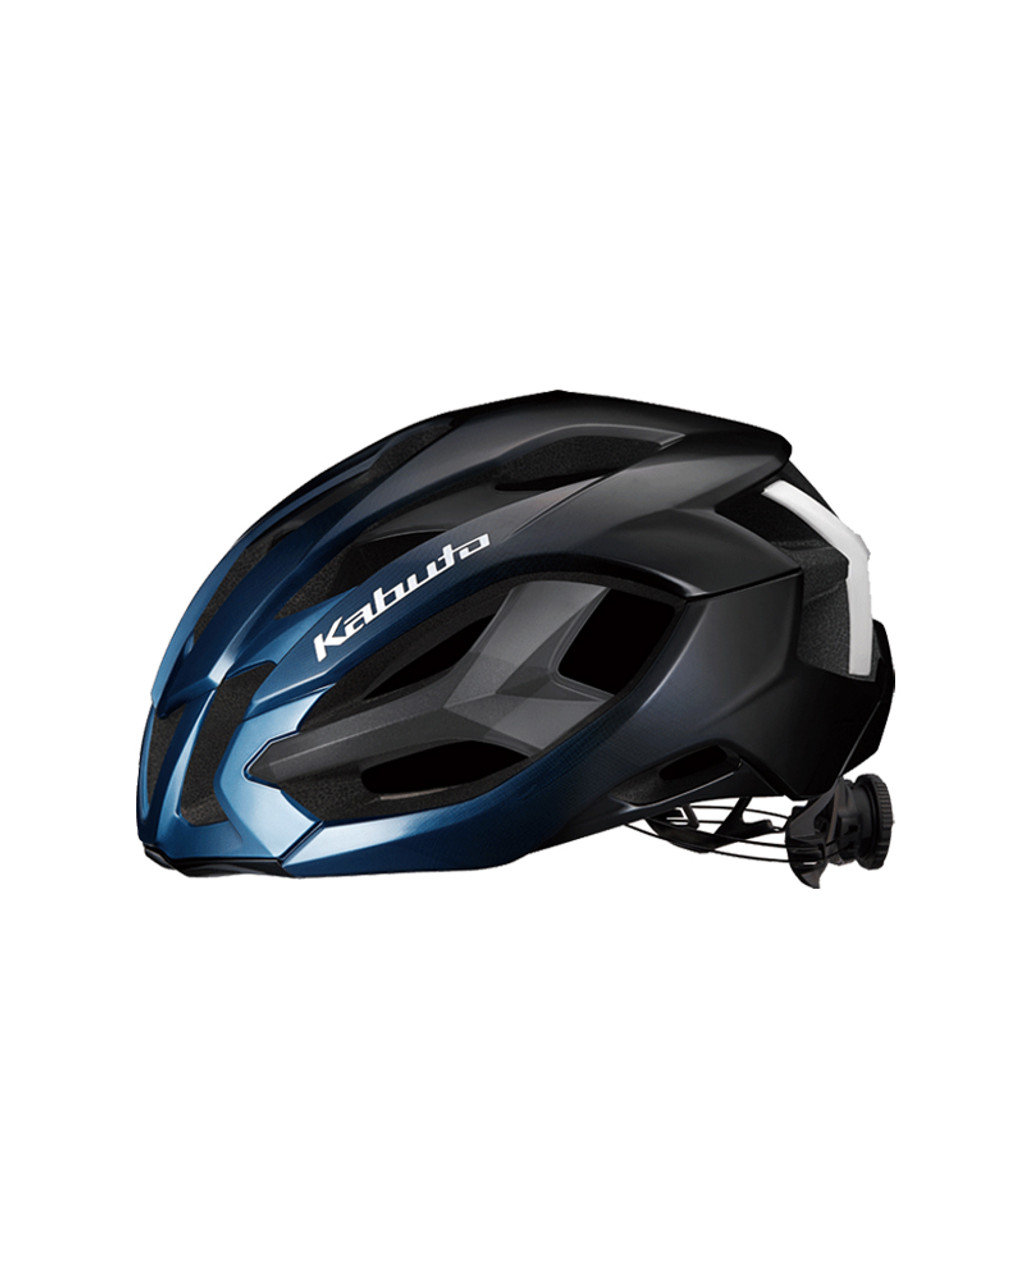 Ogk Bicycle Helmet Sale Online, SAVE 48%